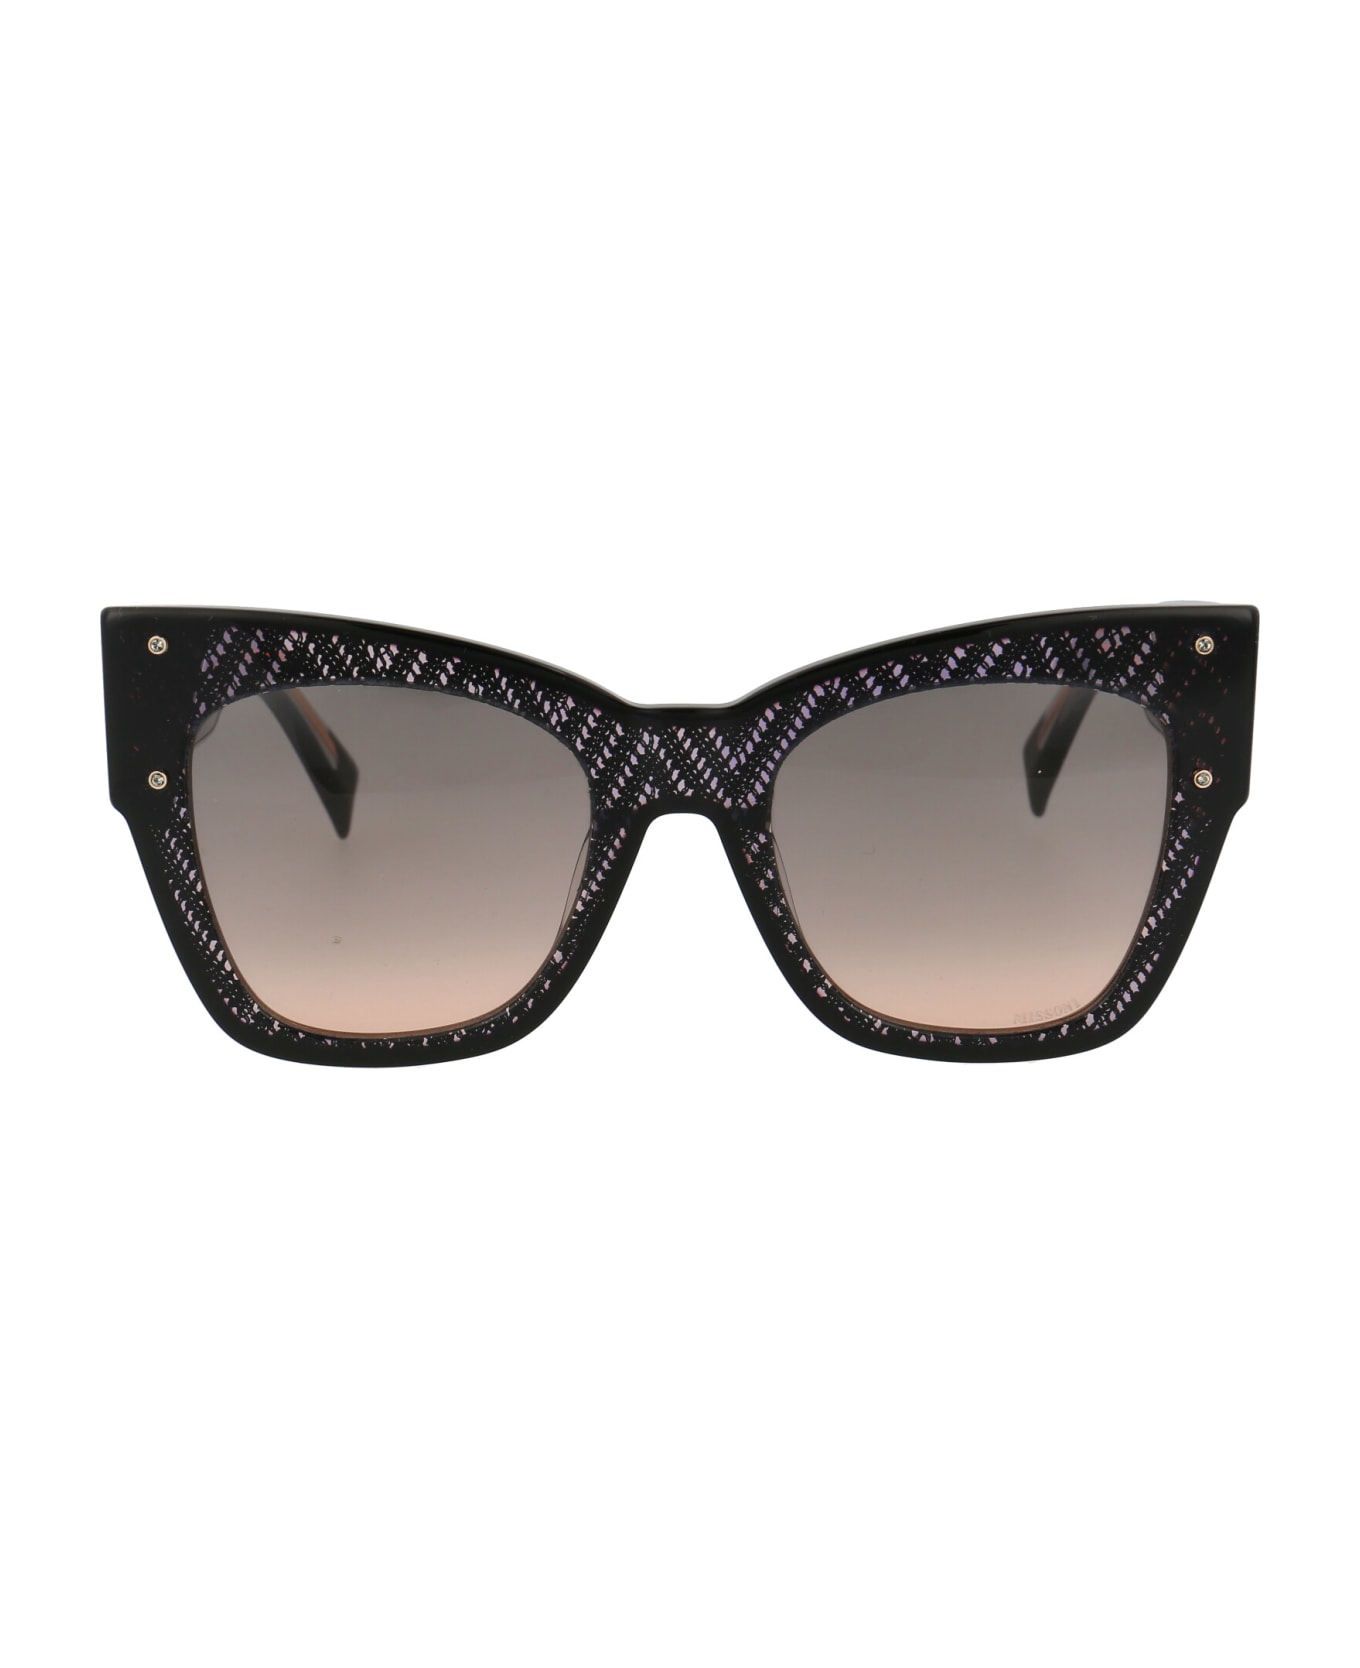 Missoni Mis 0040/s Sunglasses - KDXFF BLACK NUDE サングラス